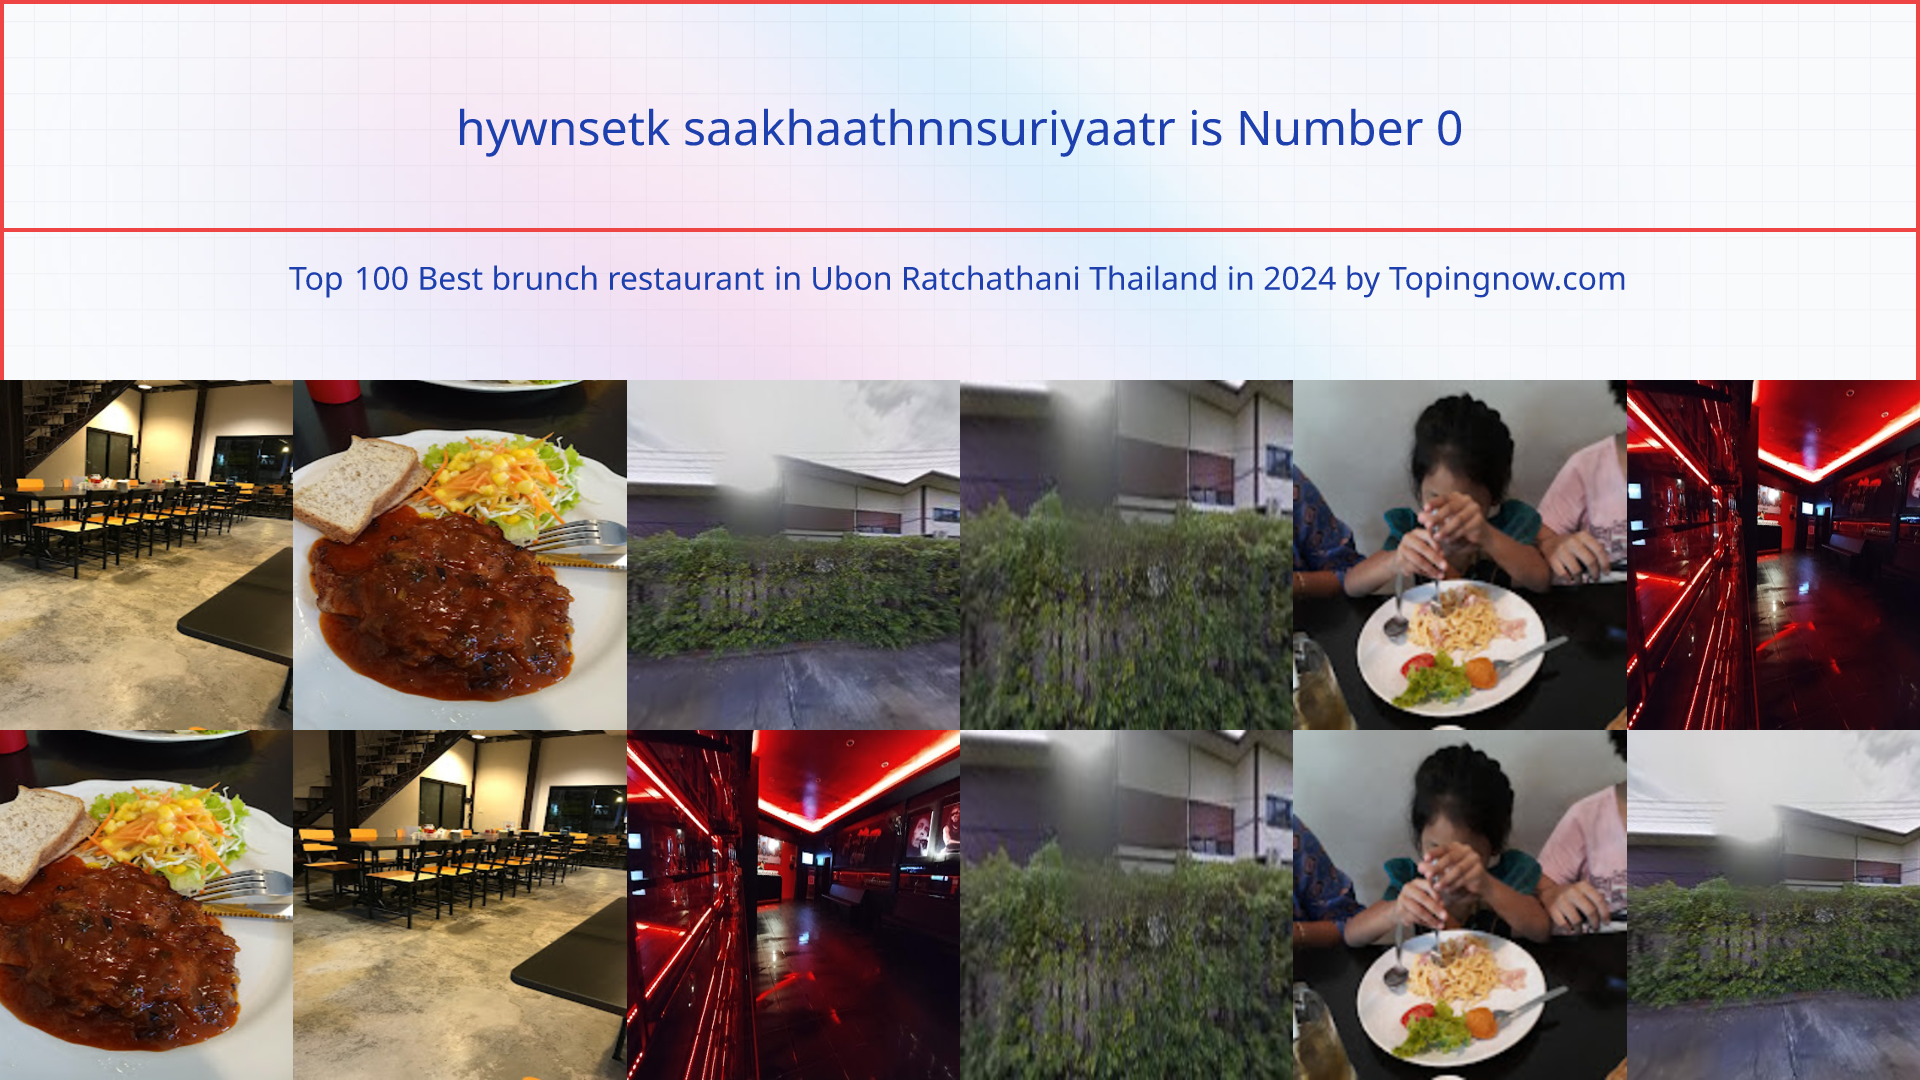 hywnsetk saakhaathnnsuriyaatr: Top 100 Best brunch restaurant in Ubon Ratchathani Thailand in 2024